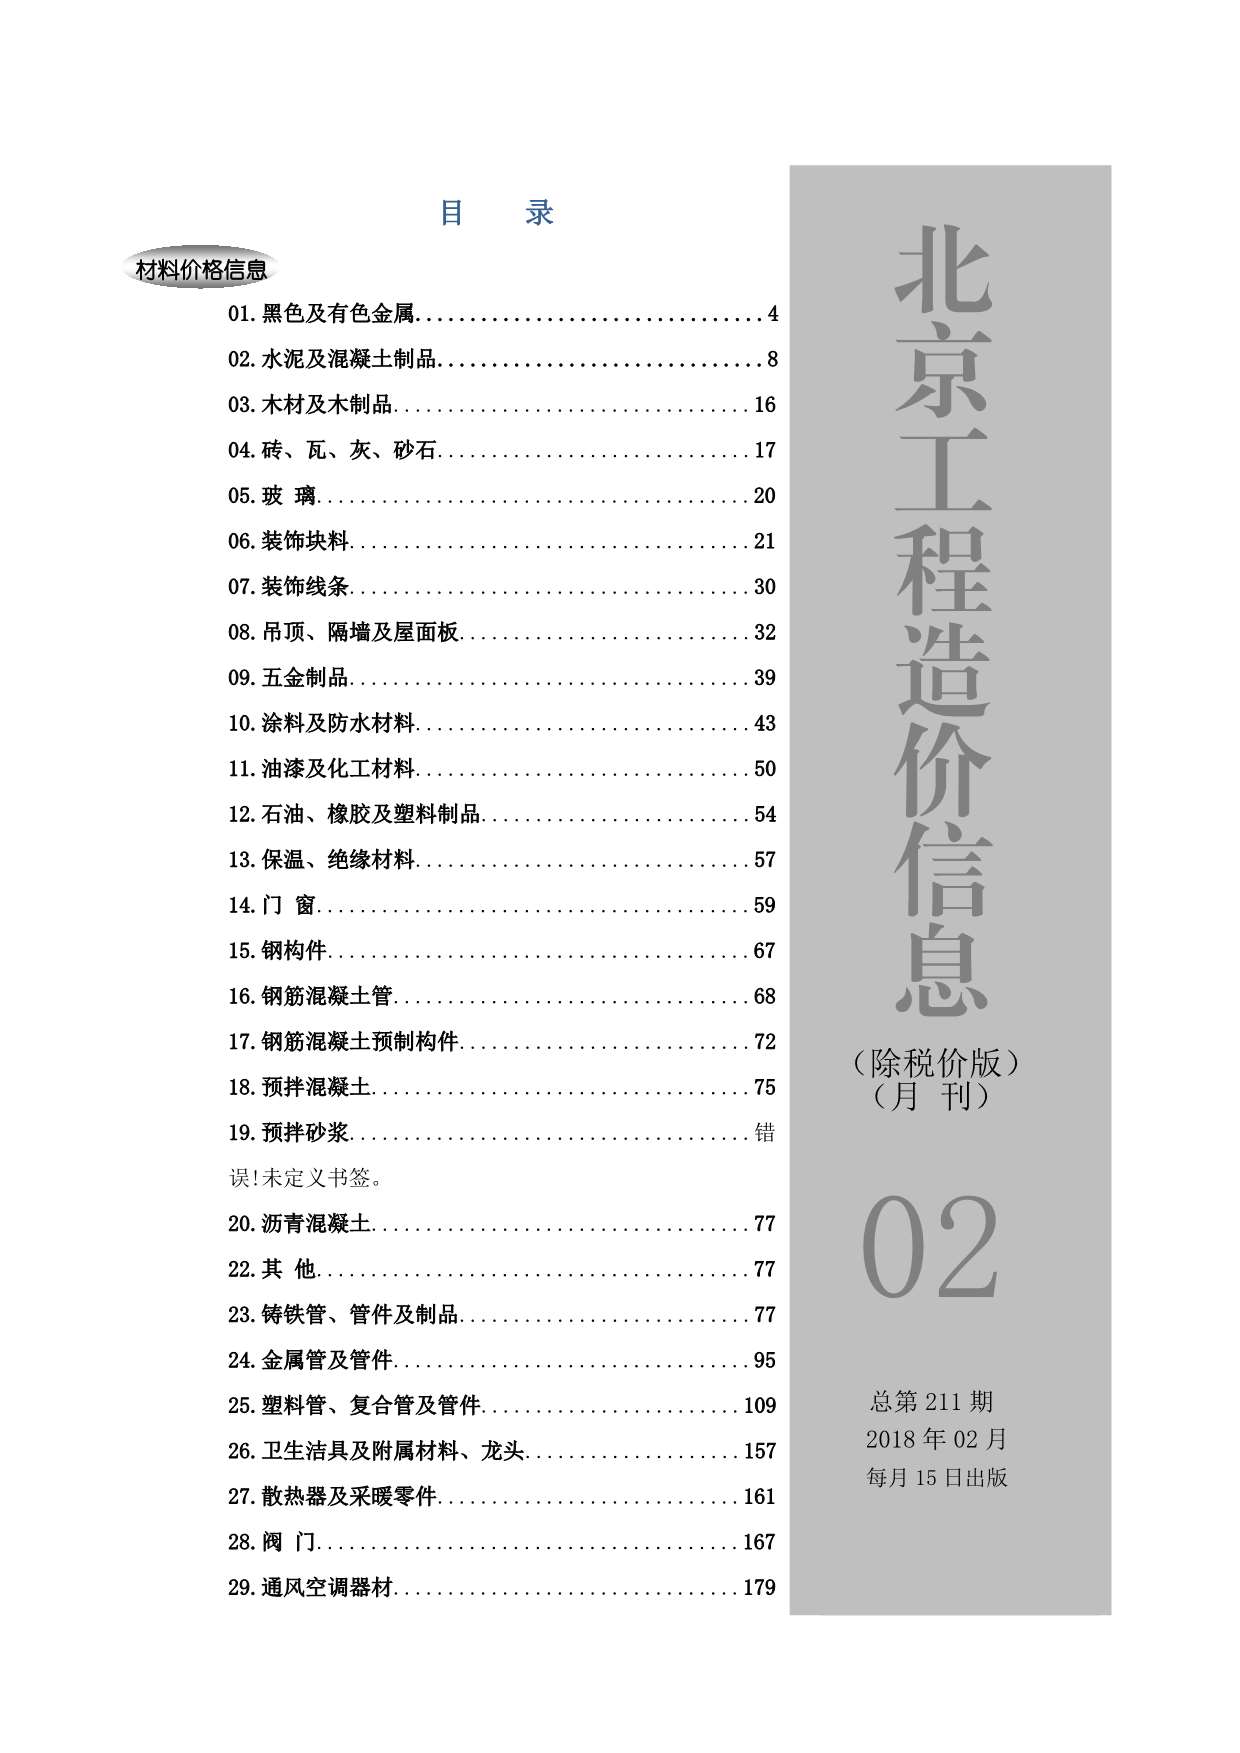 北京市2018年2月建材价格依据